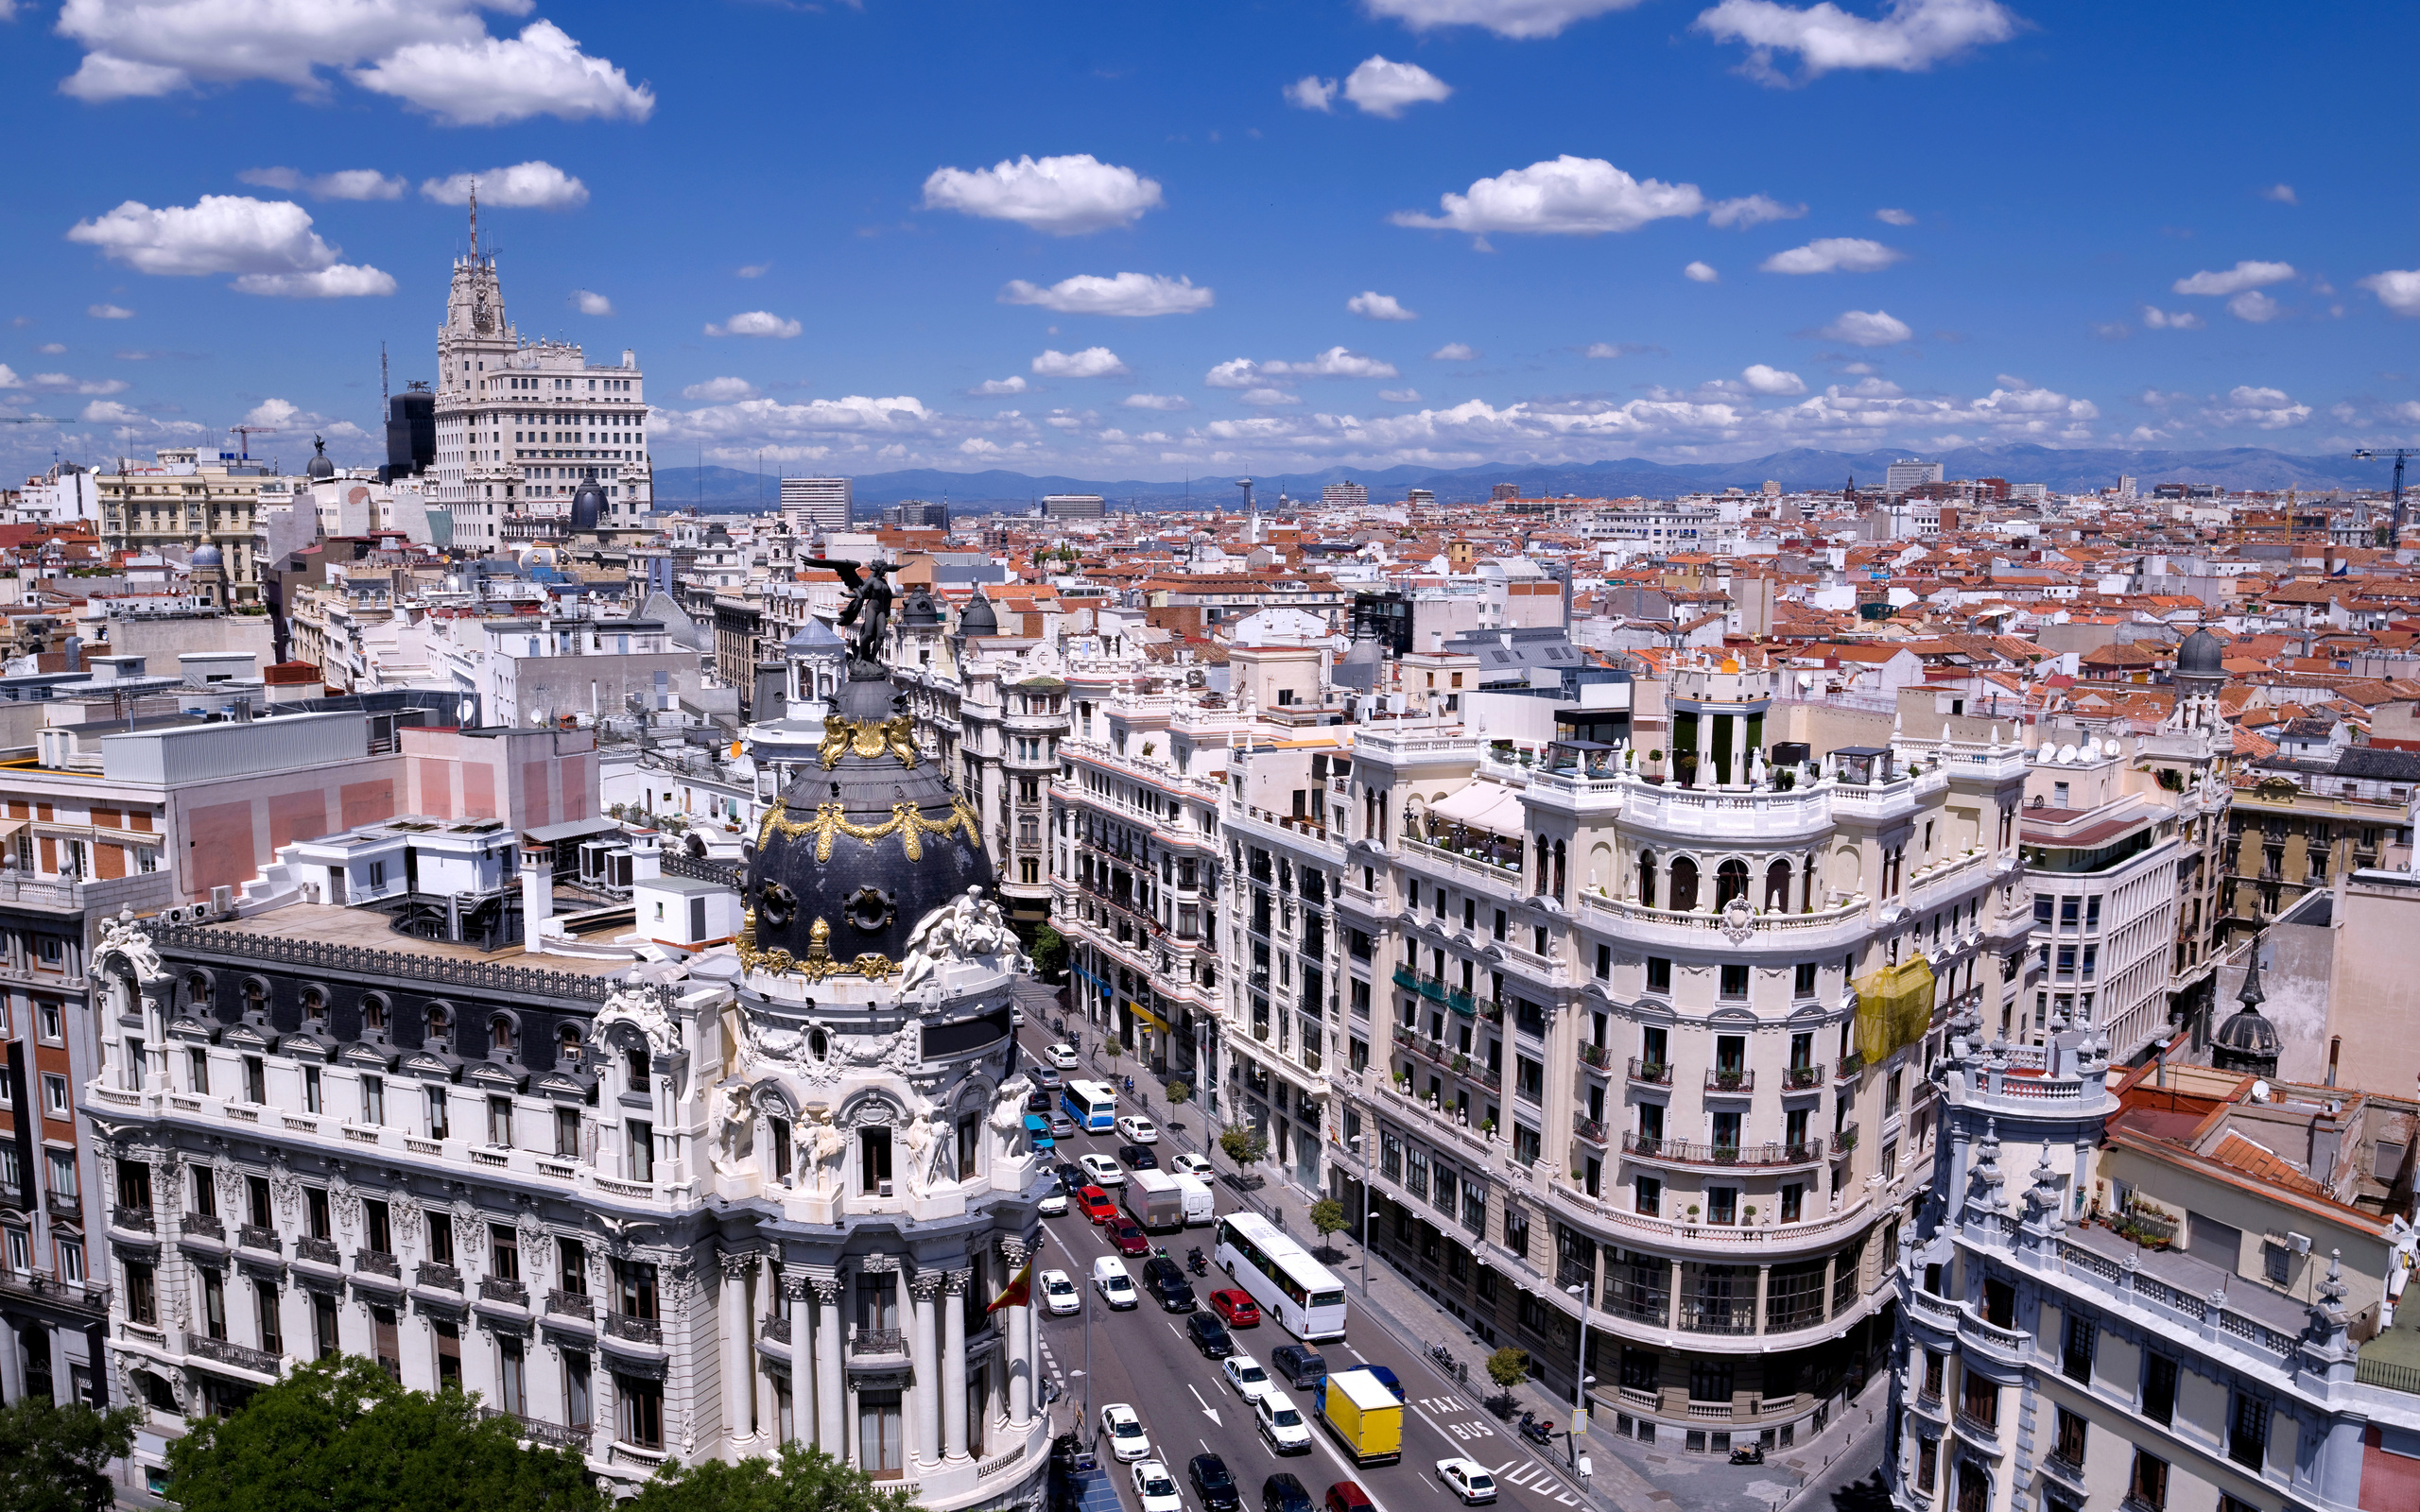 Испания, Мадрид, дома, небо, улица, облака, город, здания, архитектура, Spain, Madrid, houses, sky, street, clouds, city, buildings, architecture